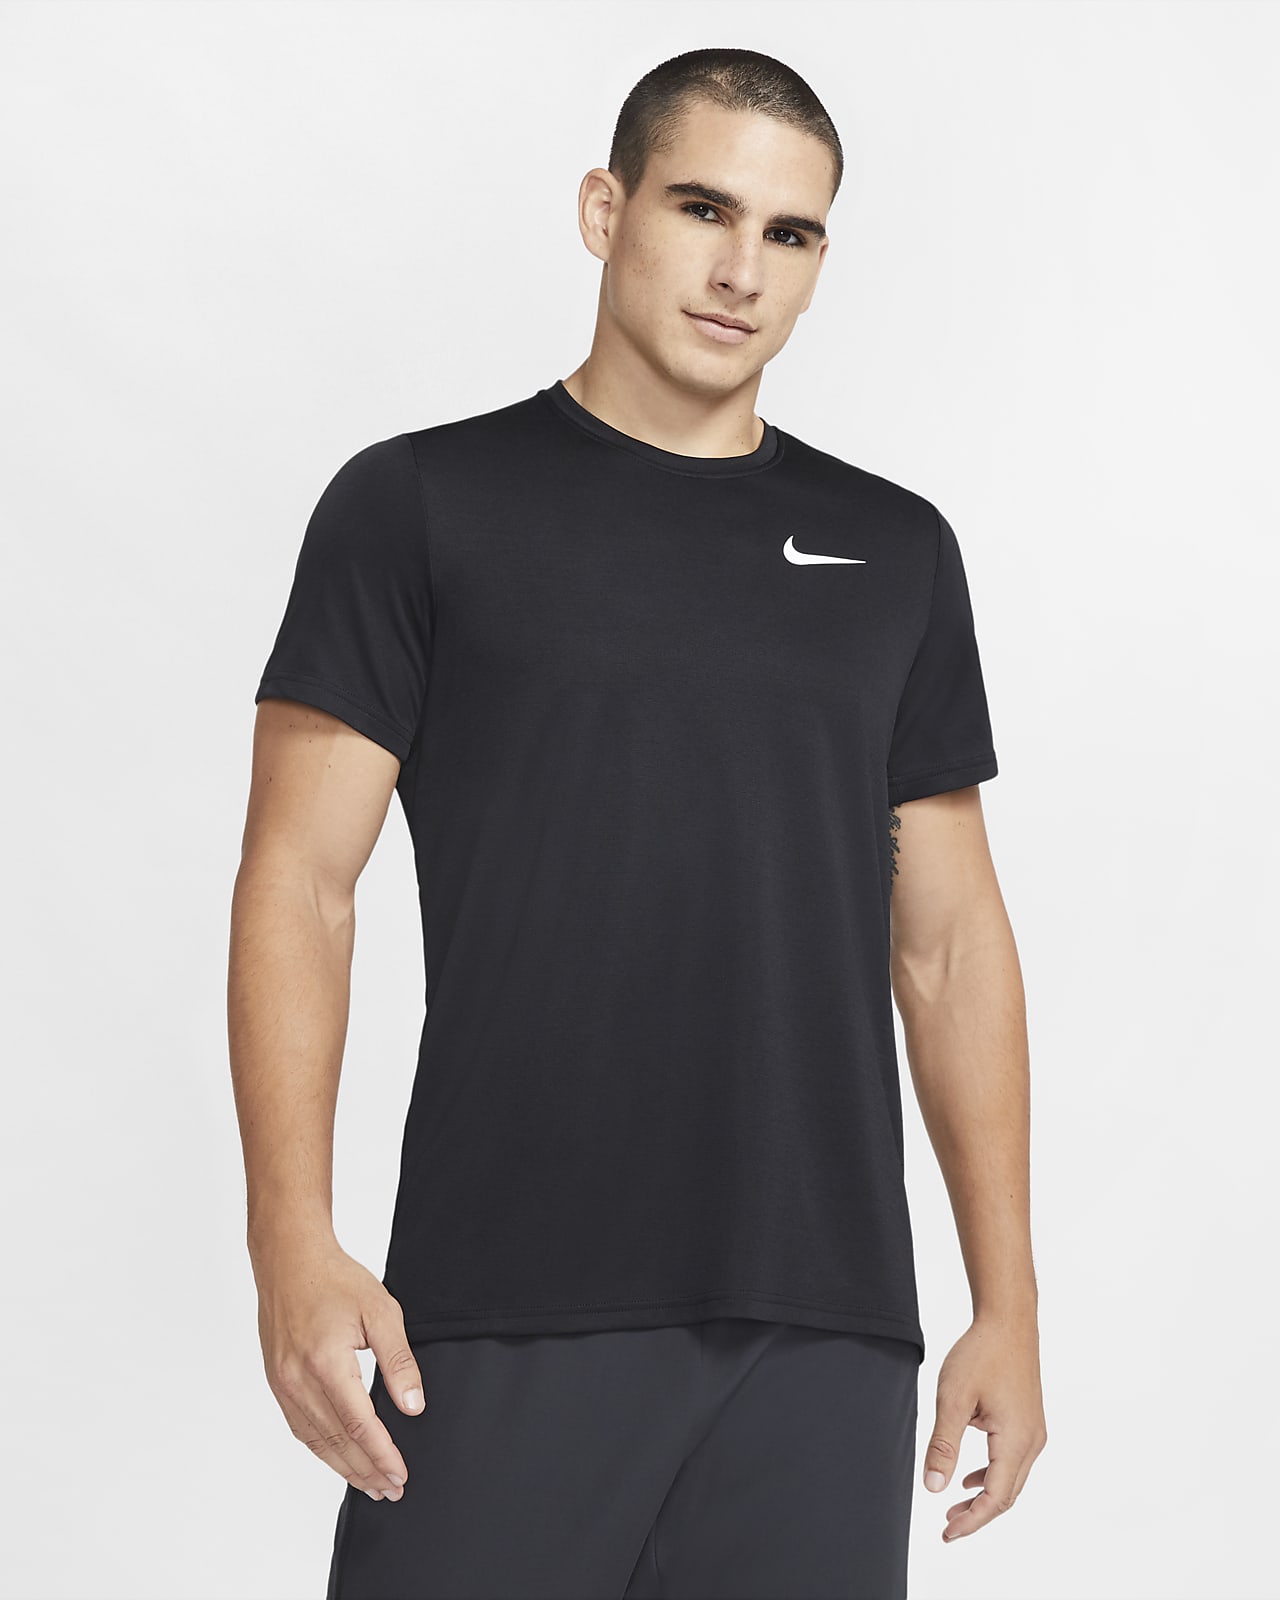 Ανδρική κοντομάνικη μπλούζα προπόνησης Nike Dri-FIT Superset